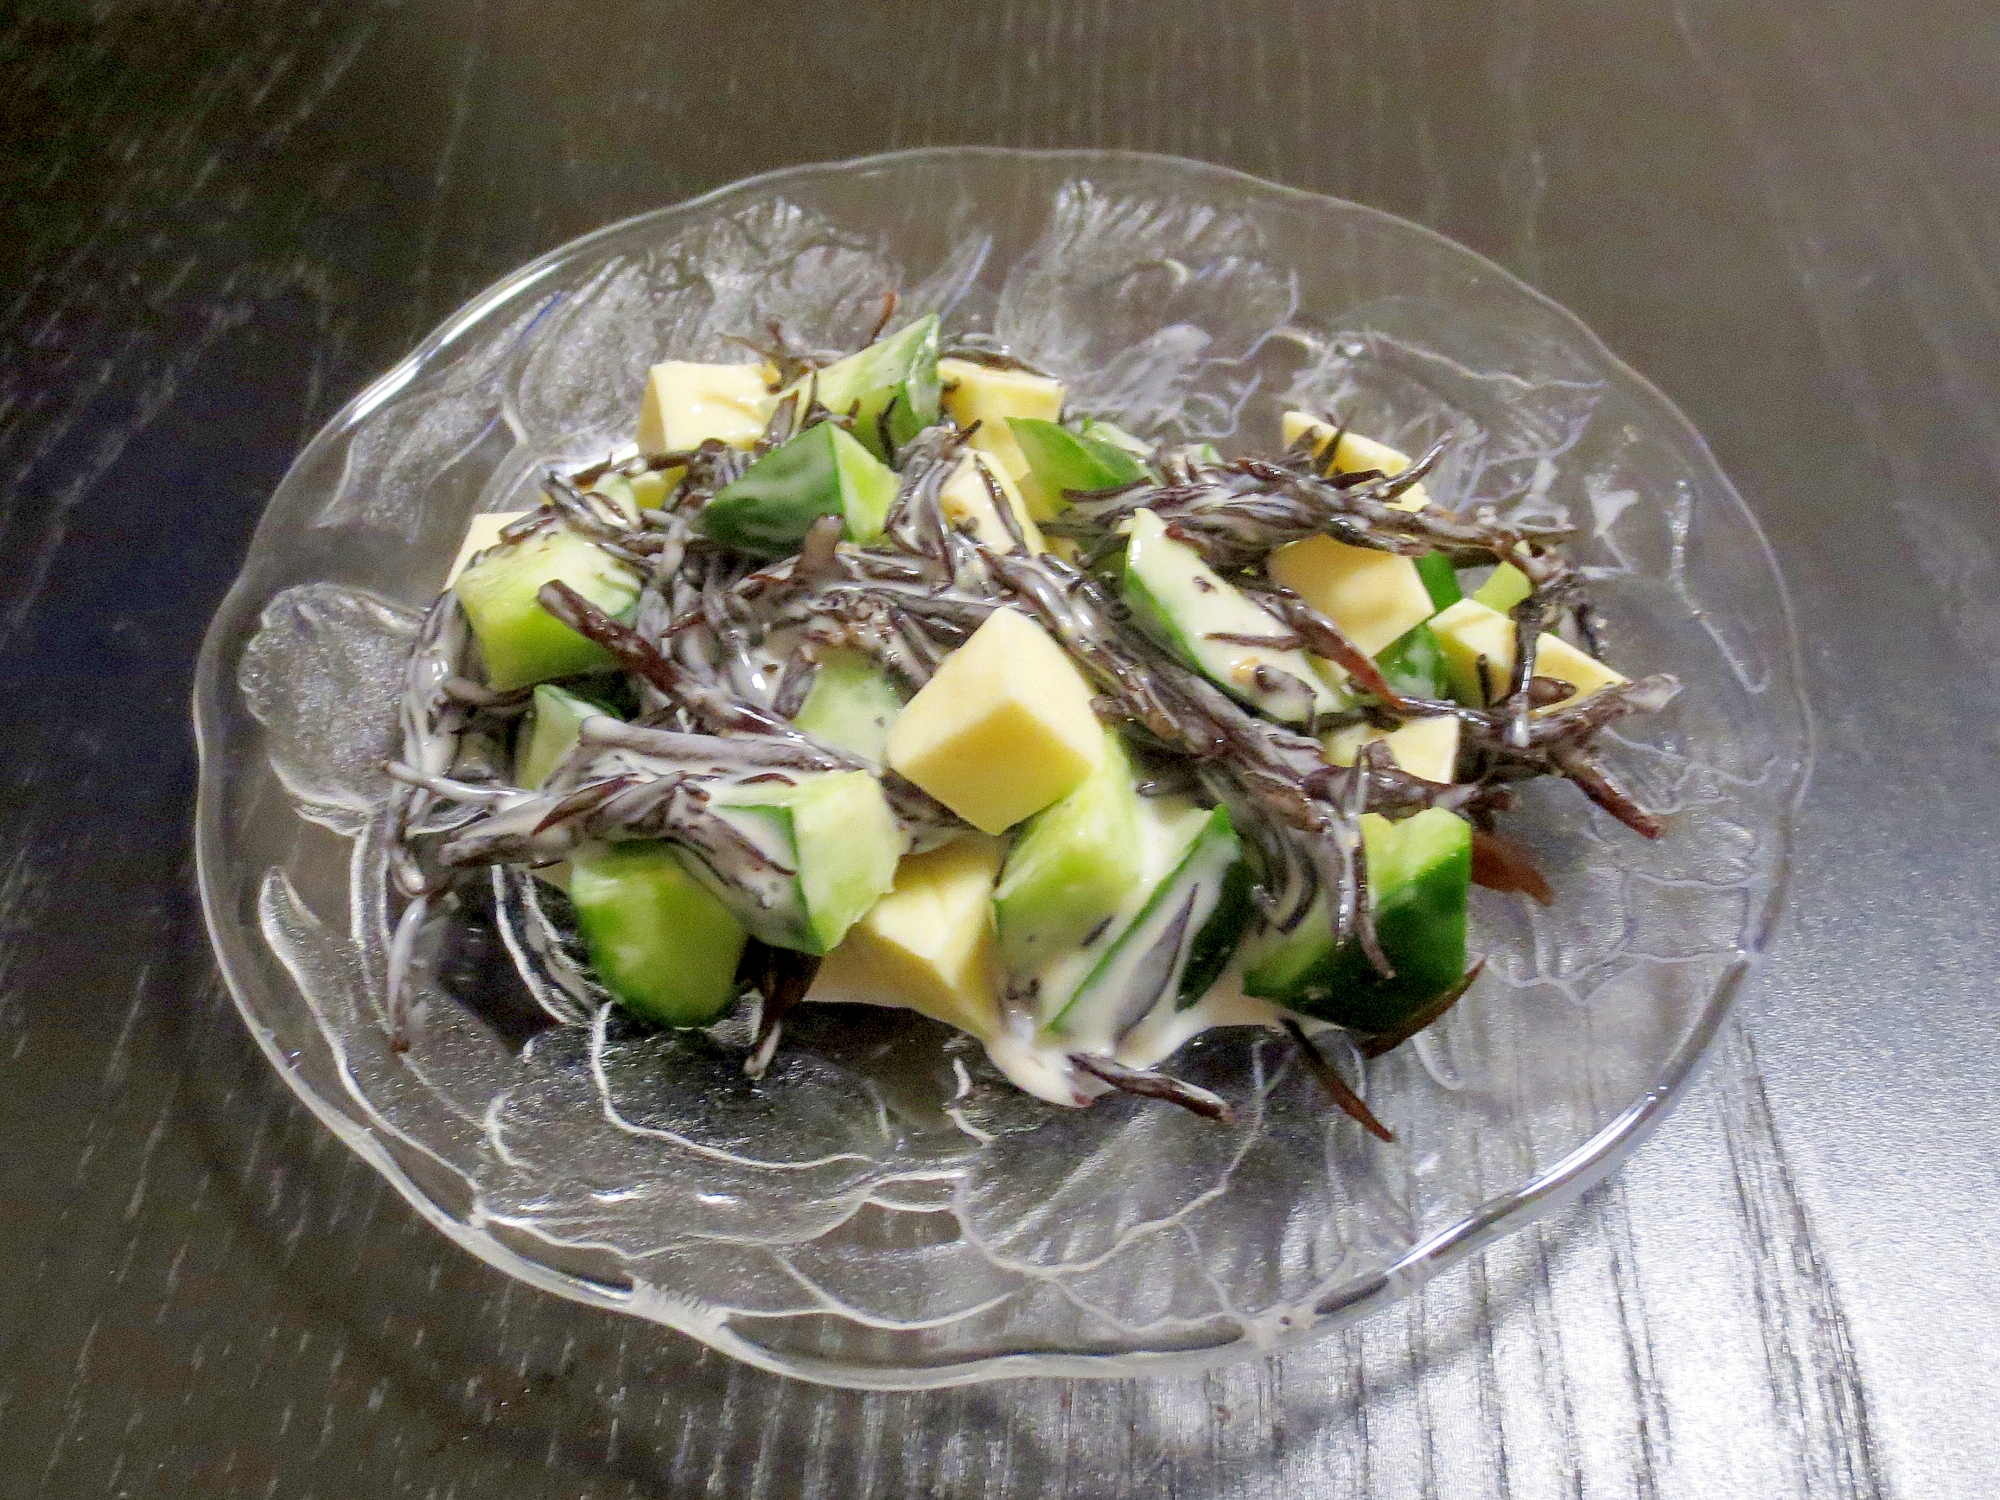 透明な皿にきゅうりとひじきのわさびマヨネーズサラダが盛られている様子